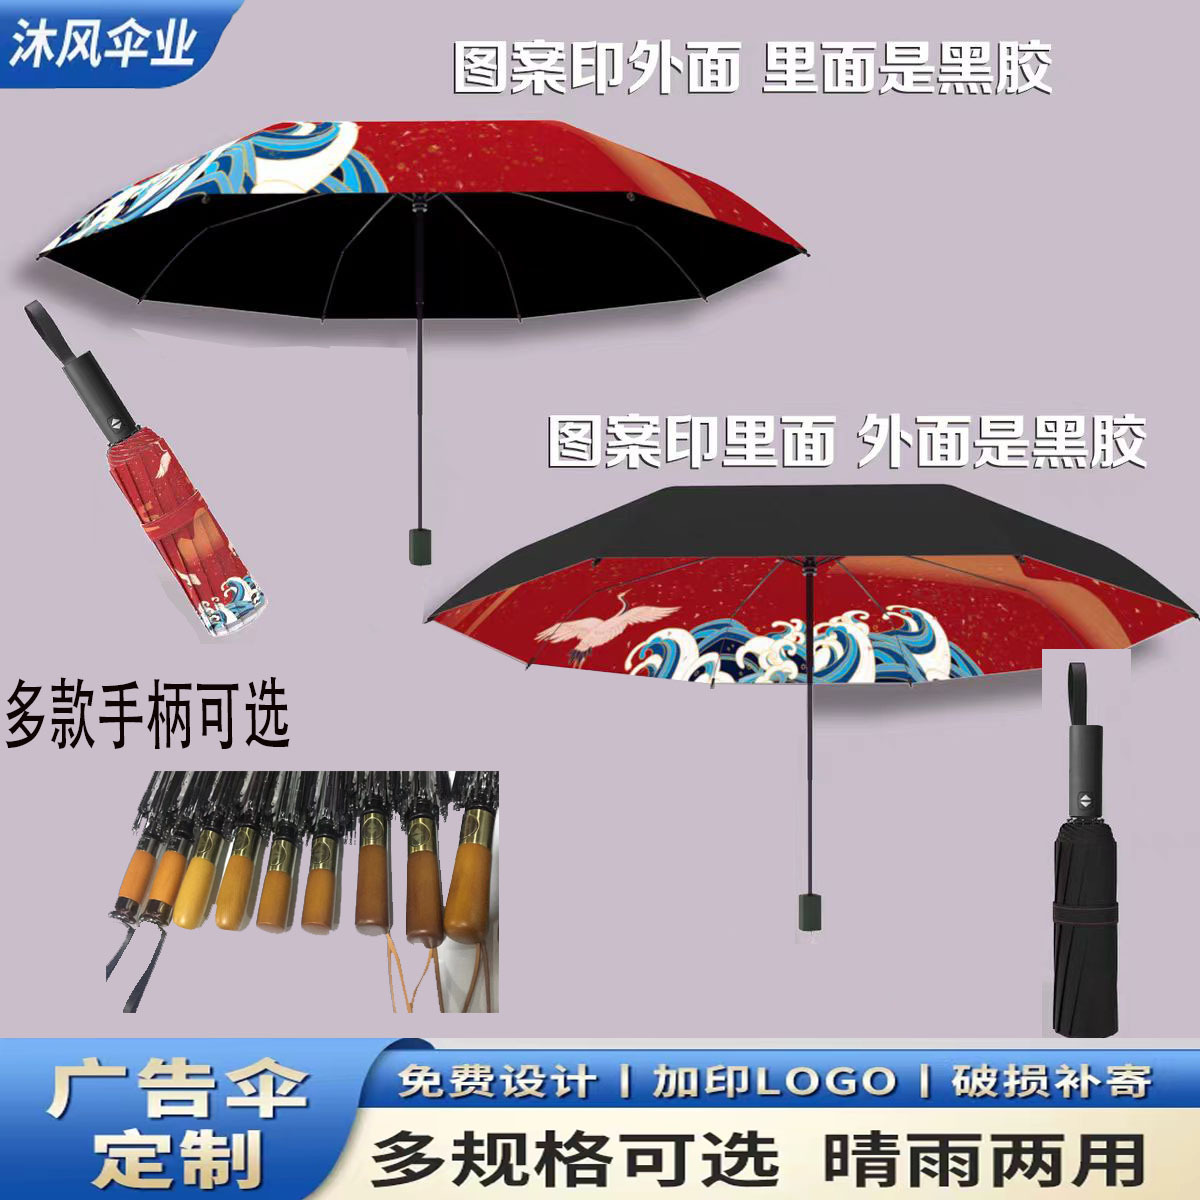 高端雨伞定制图案订制晴雨两用伞自动黑胶伞折叠防晒礼品广告伞